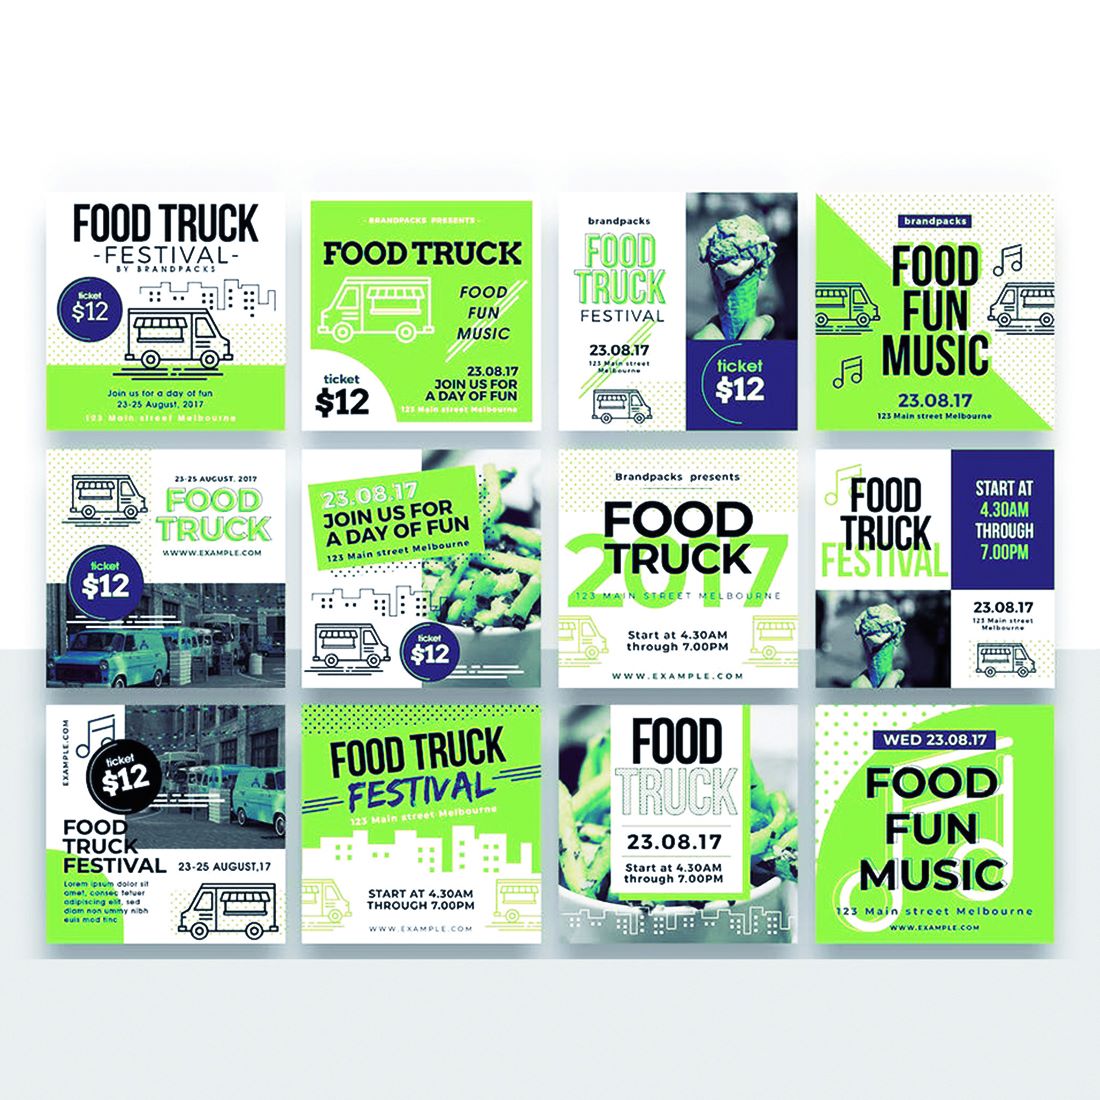 Series of brochures designed to look like food trucks.